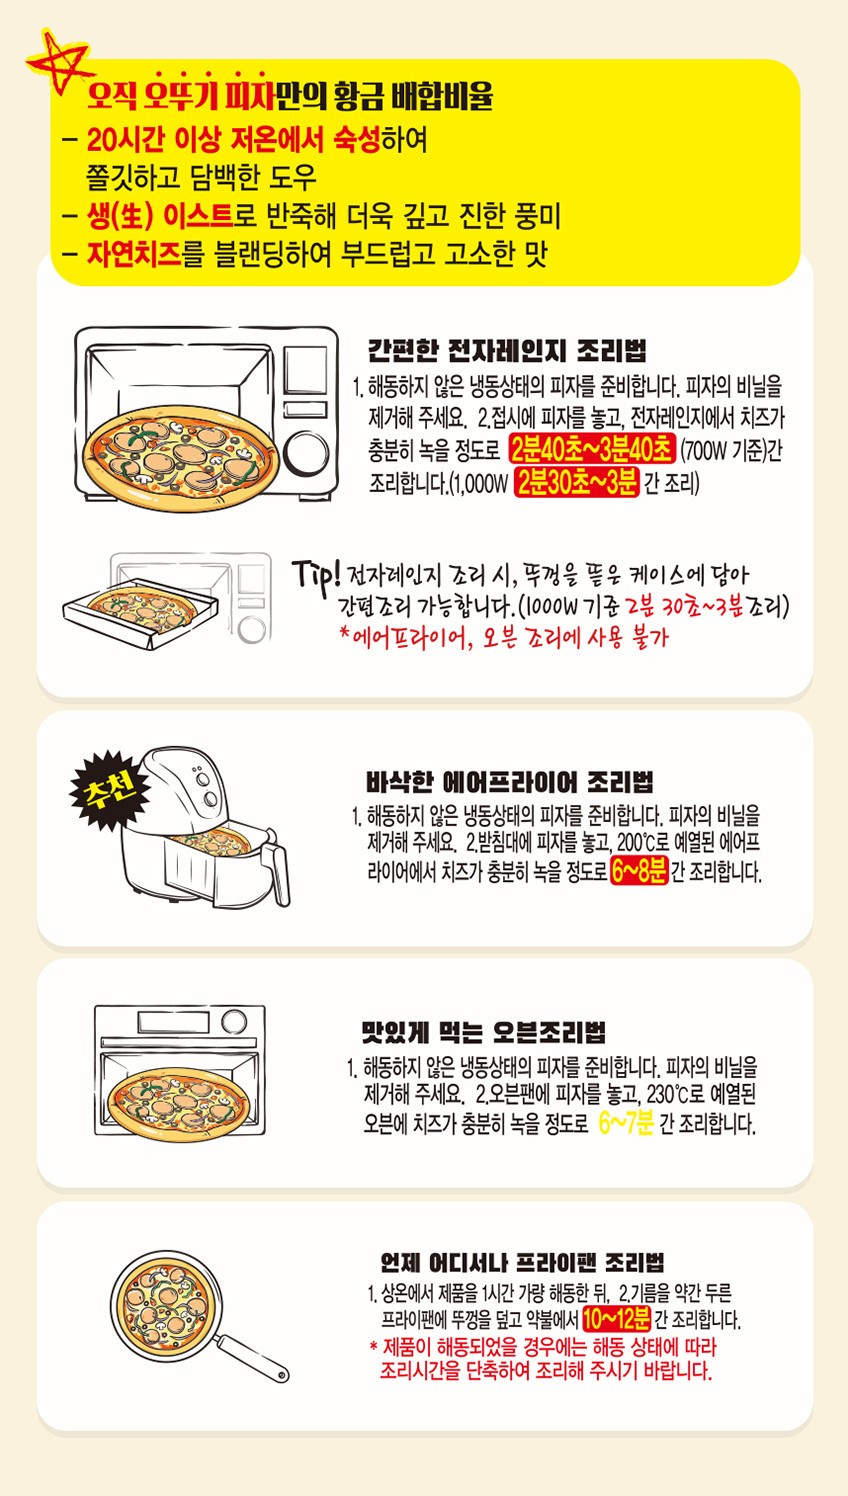 韓國食品-[Ottogi] Crunchy Bulgogi Mini Pizza 180g